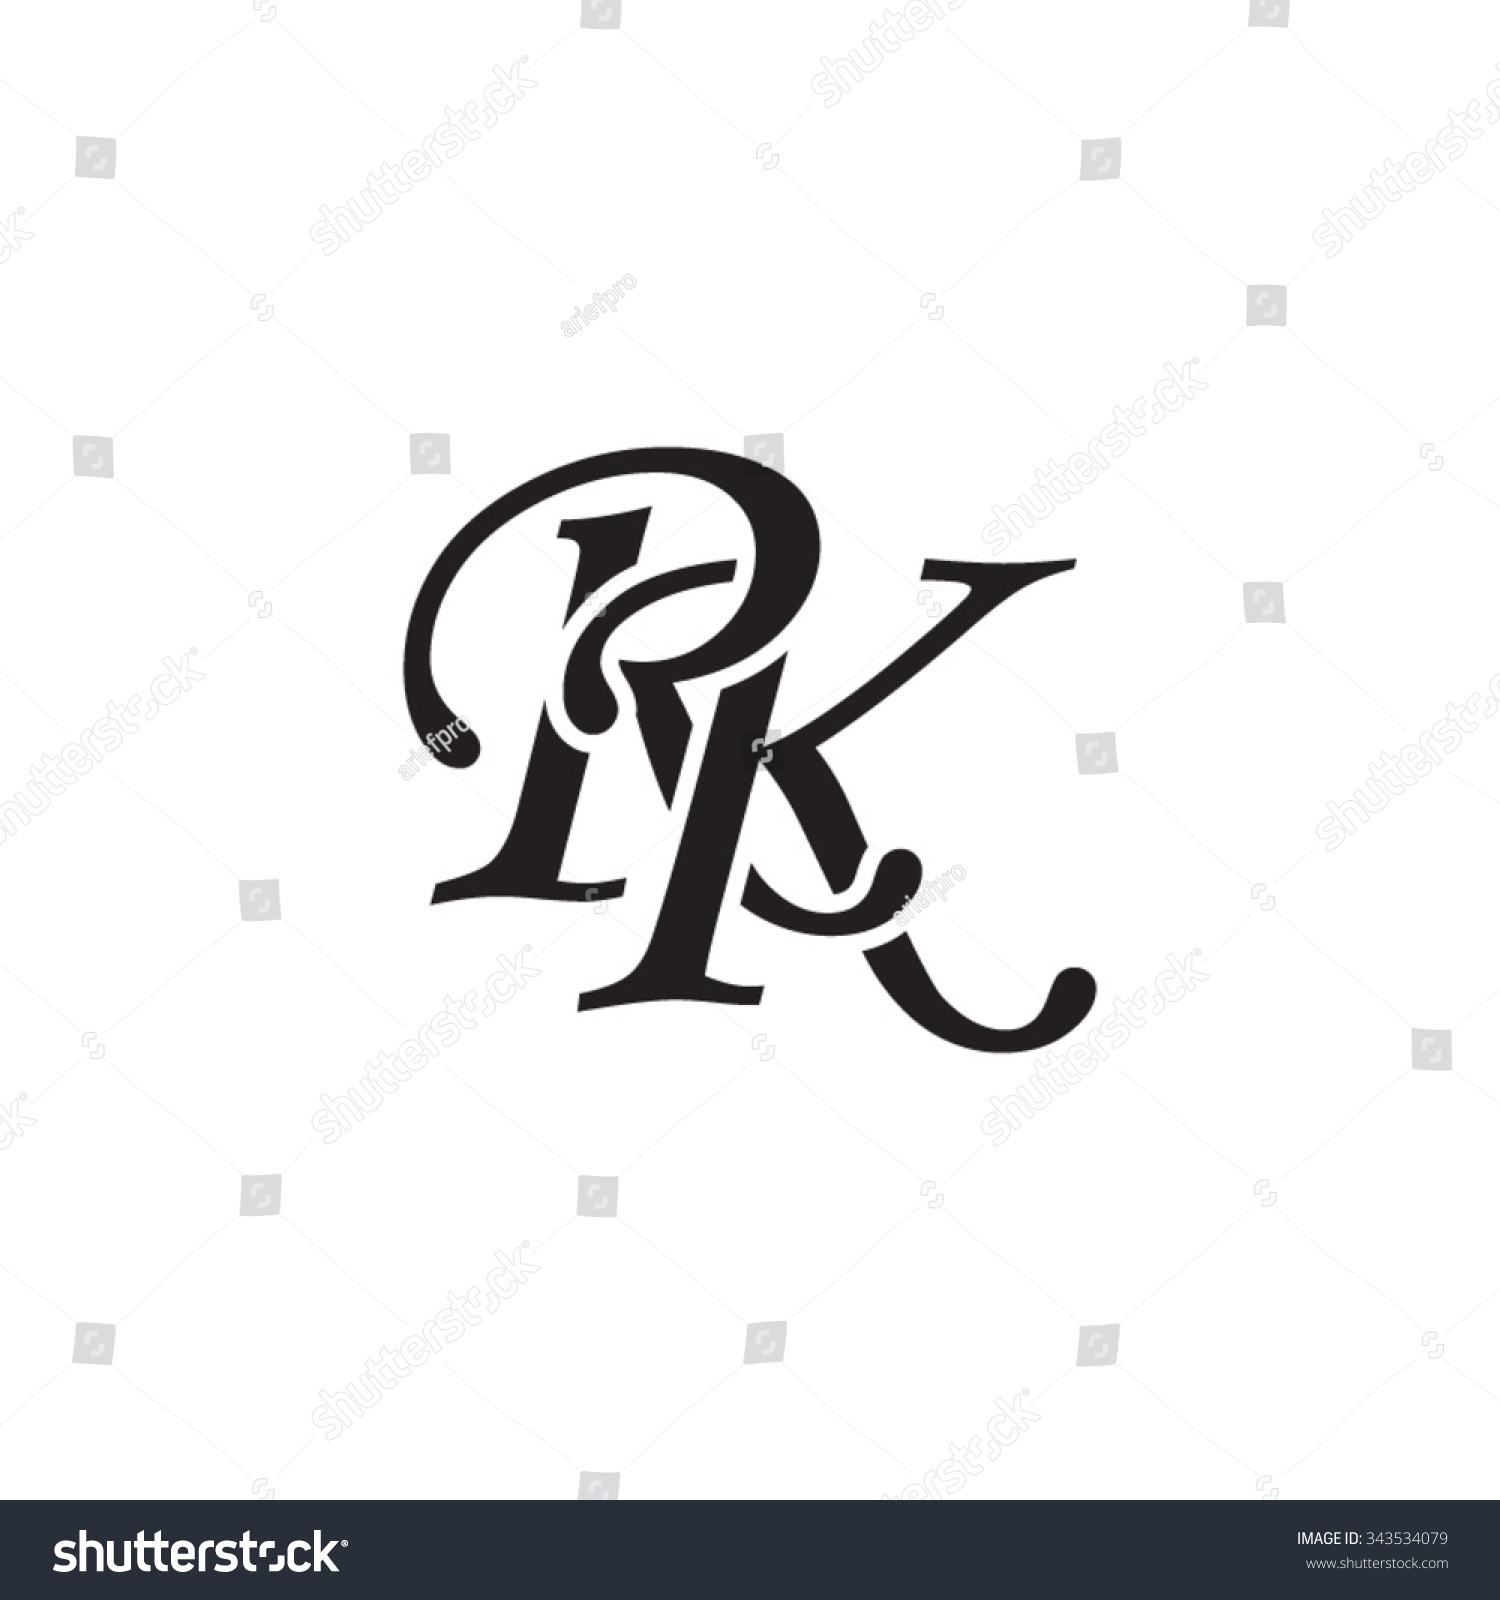 Rk Initial Monogram Logo